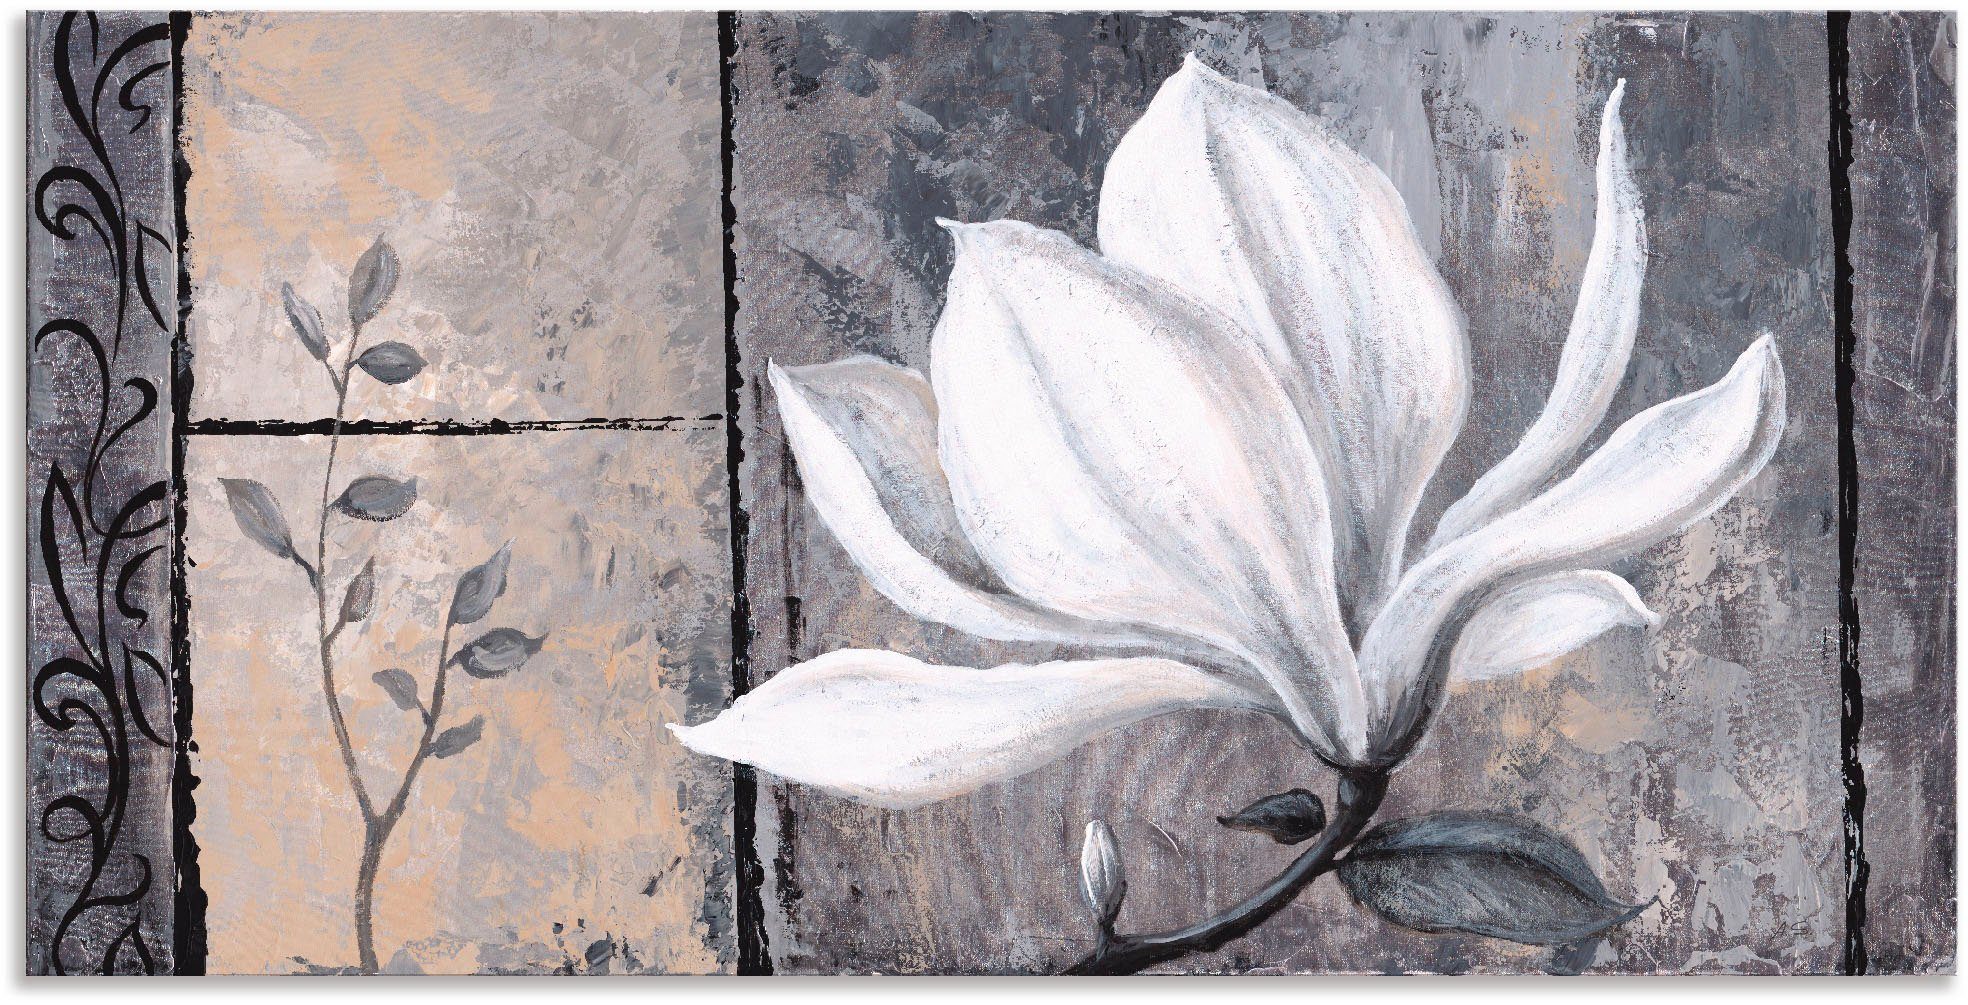 Artland Artprint Klassieke magnolia in vele afmetingen & productsoorten - artprint van aluminium / artprint voor buiten, artprint op linnen, poster, muursticker / wandfolie ook ges